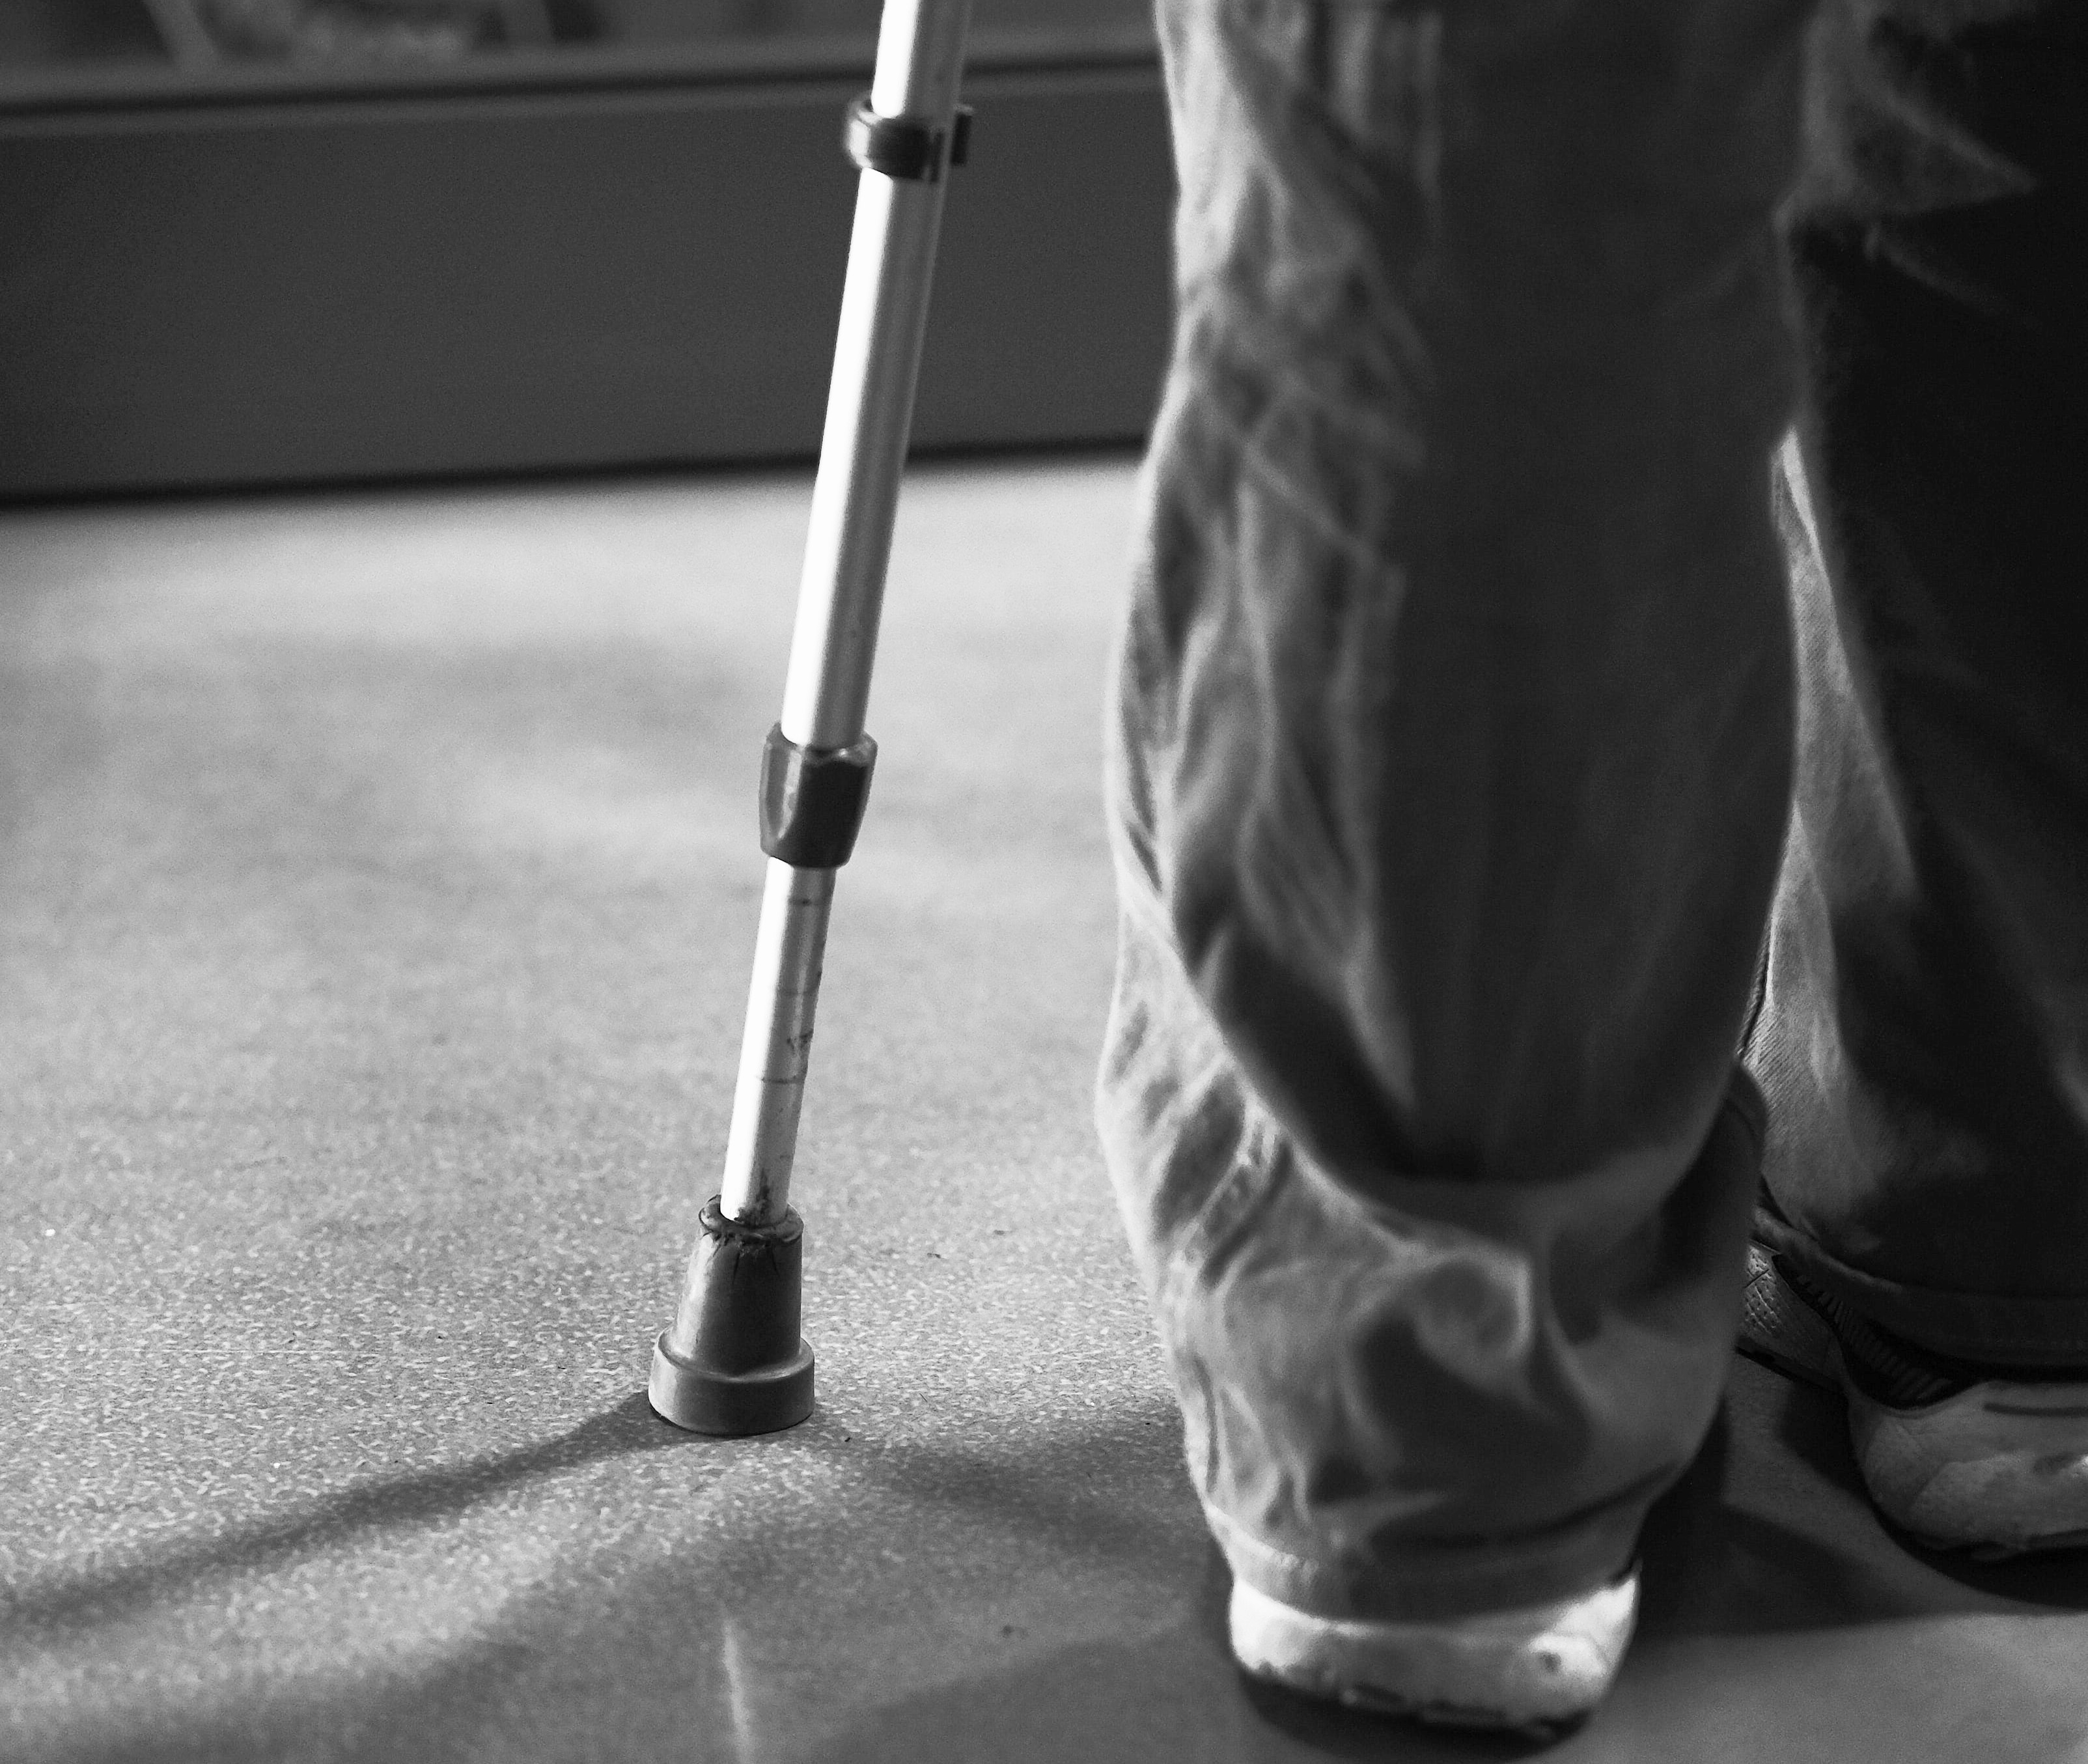 O tehnologie revoluționară ajută un bărbat paralizat să meargă din nou